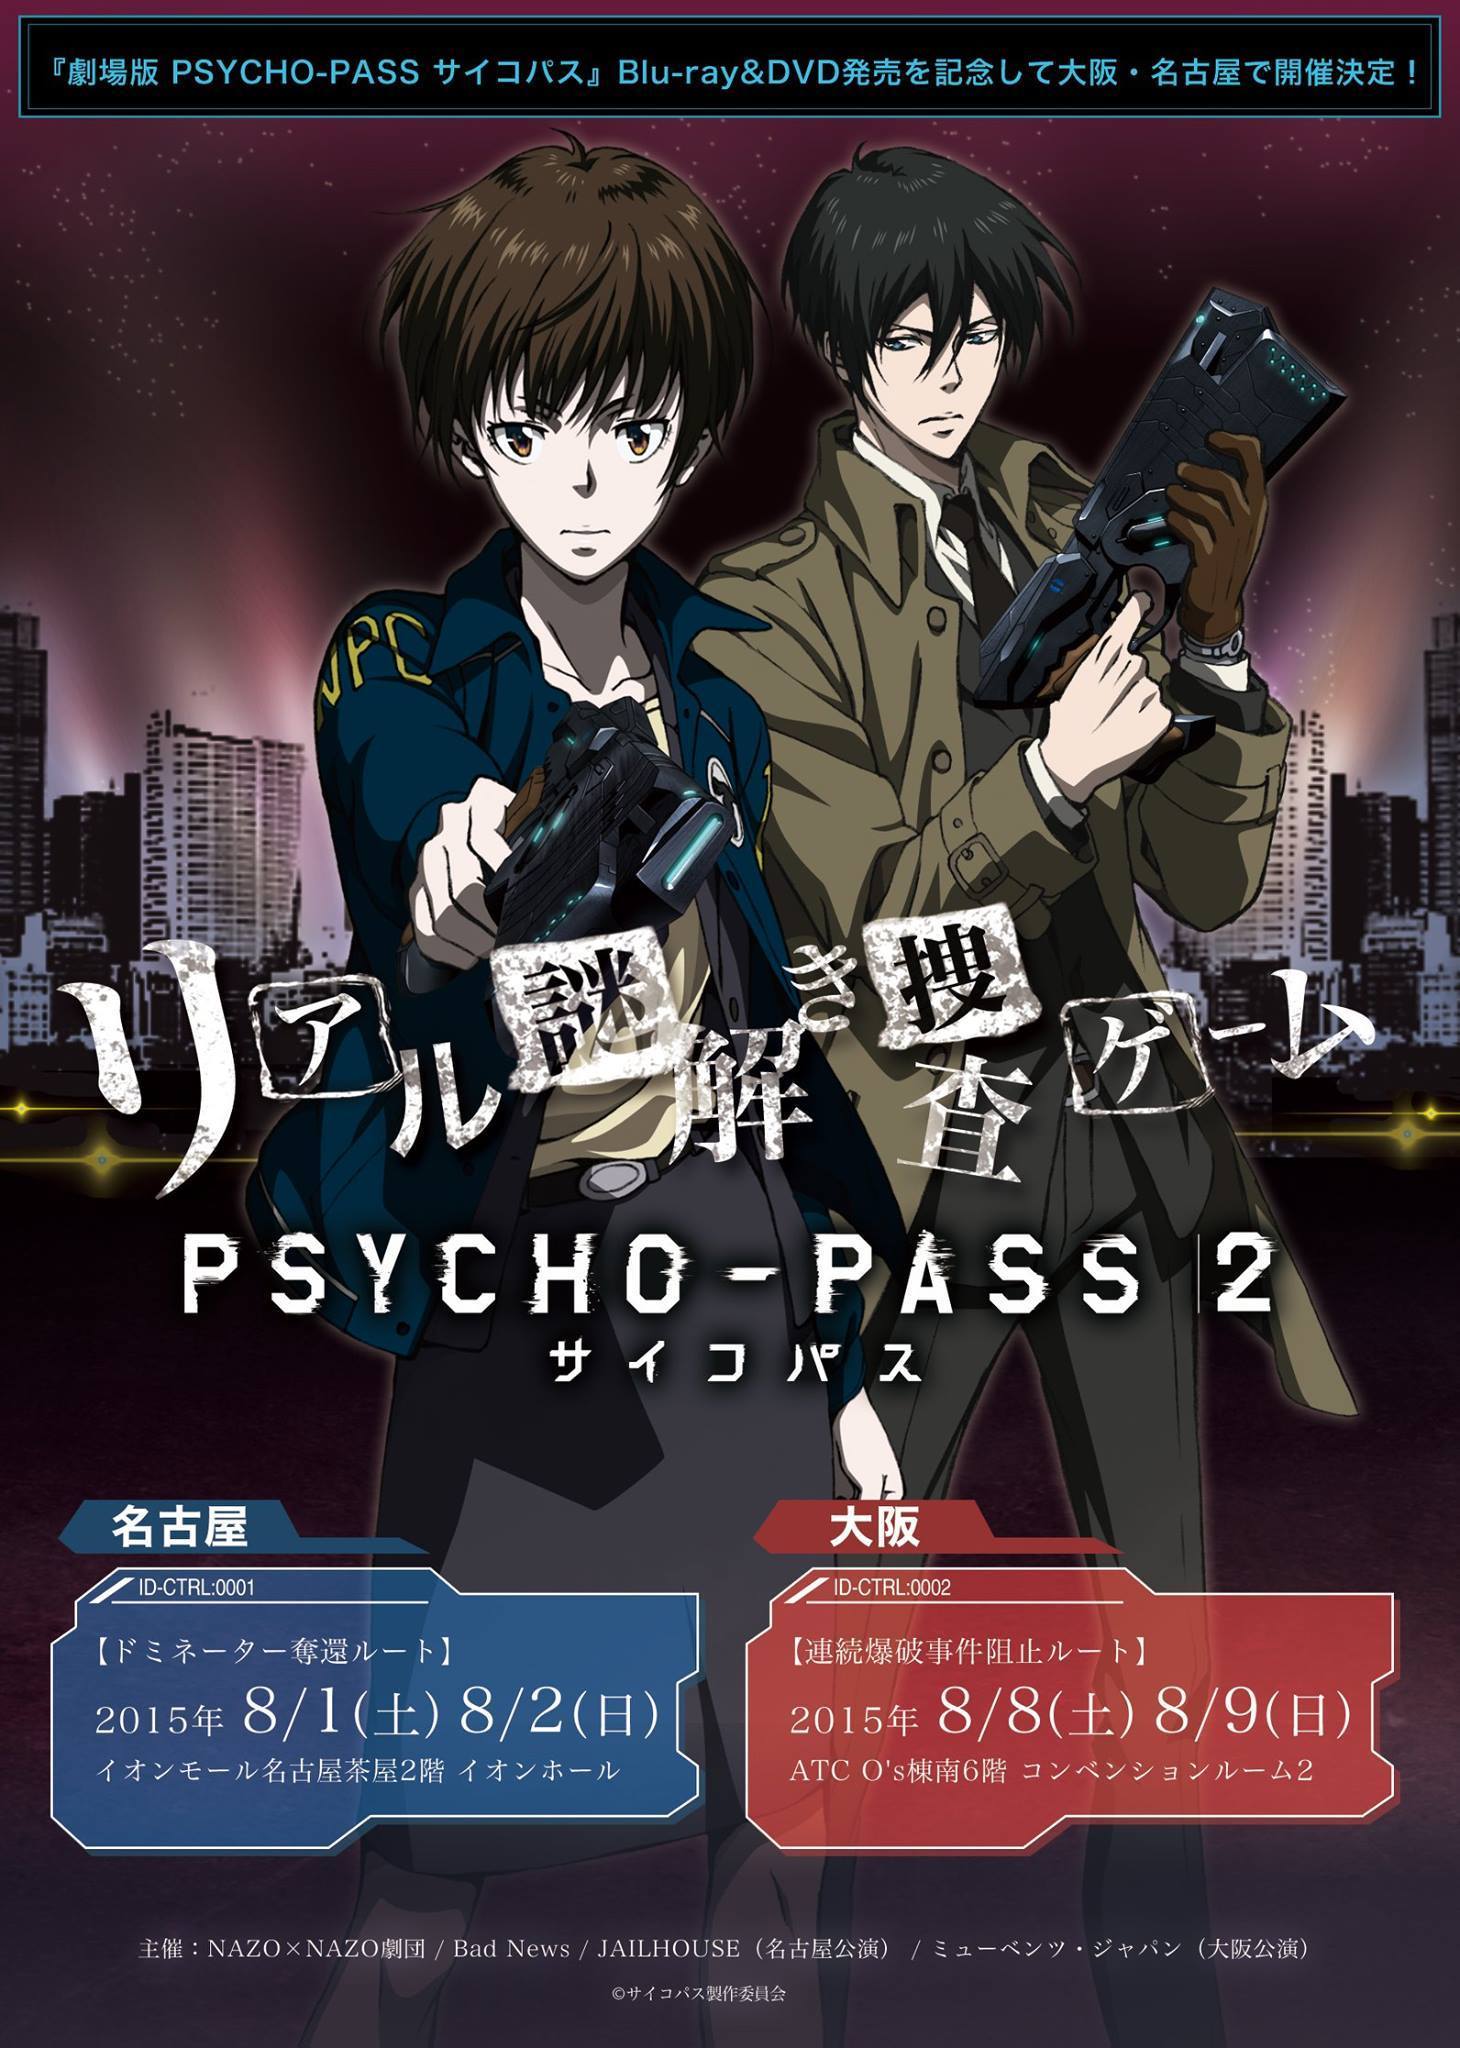 アニメ Psycho Pass 2 サイコパス リアル謎解き捜査ゲーム が名古屋 大阪へ Spice エンタメ特化型情報メディア スパイス